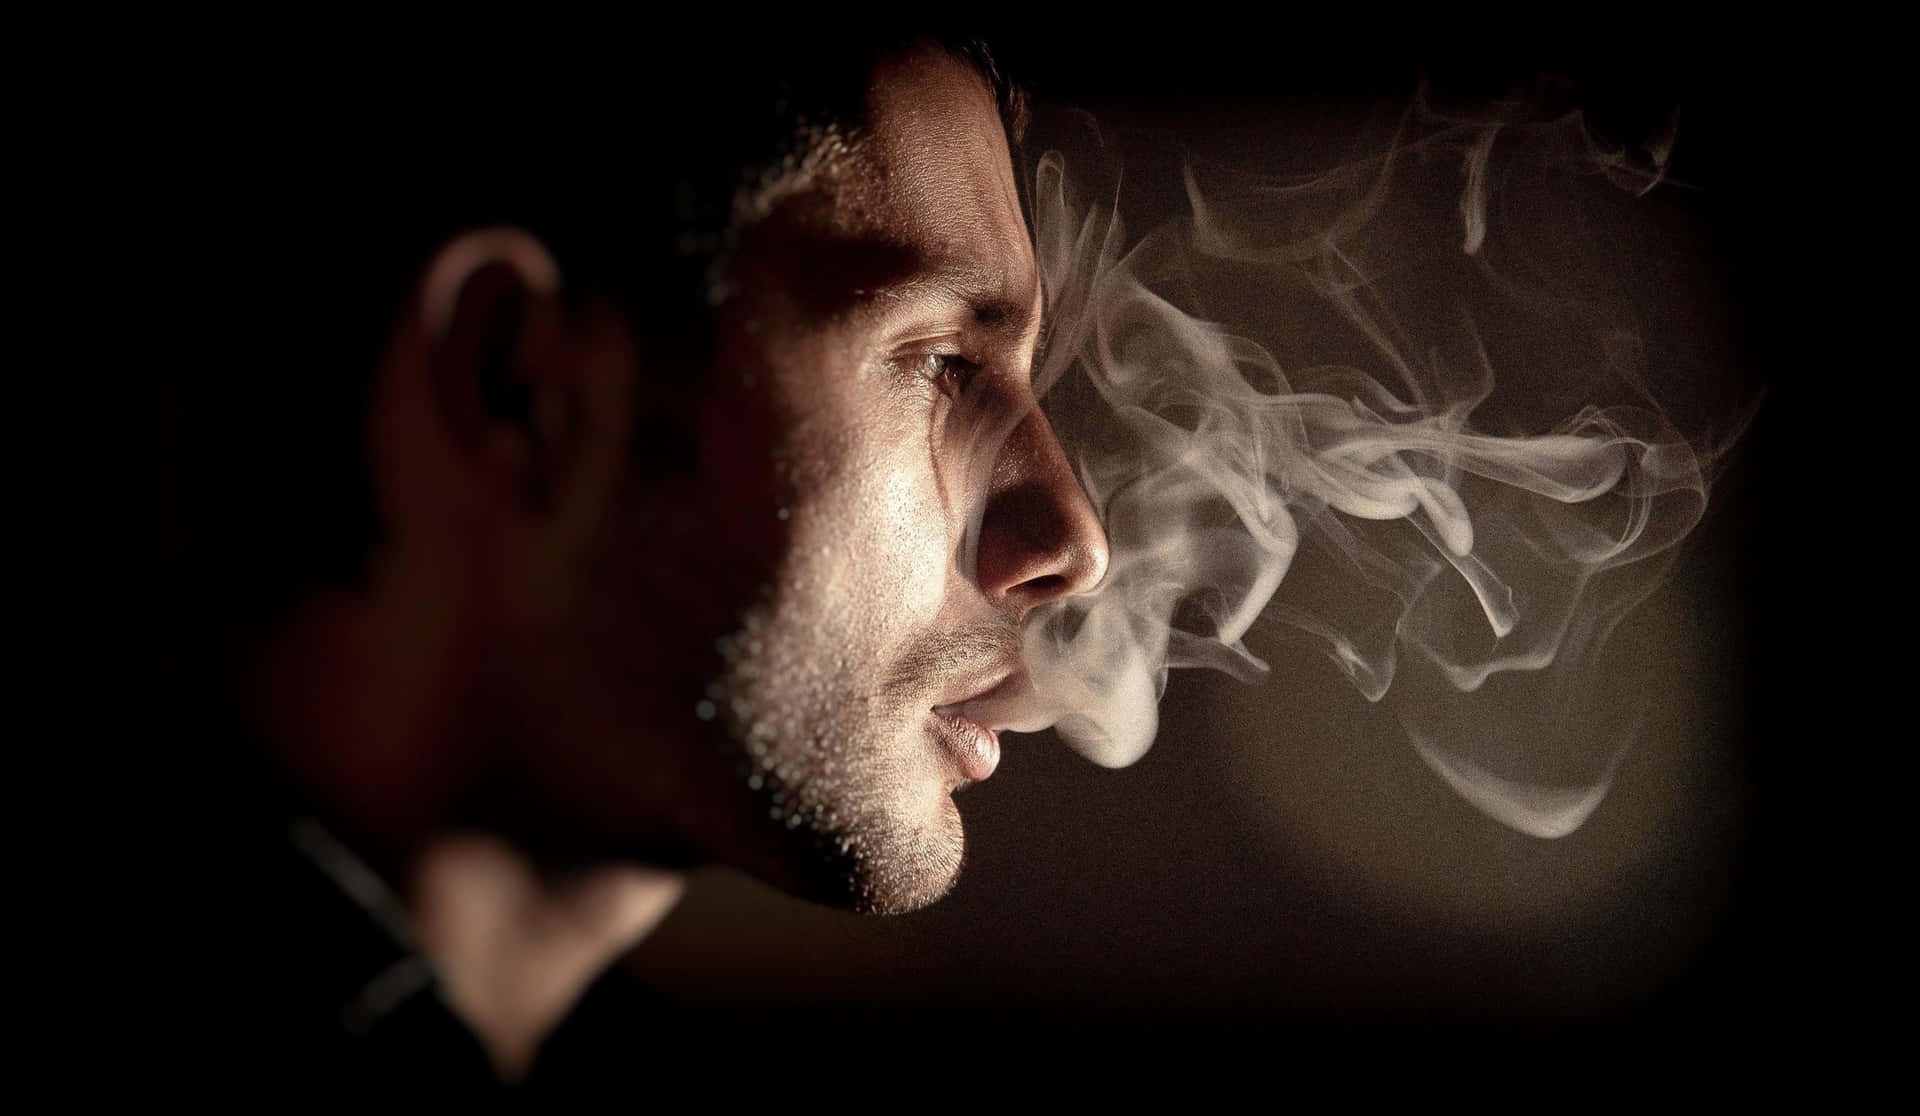 Mann,der Raucht, Profilbild